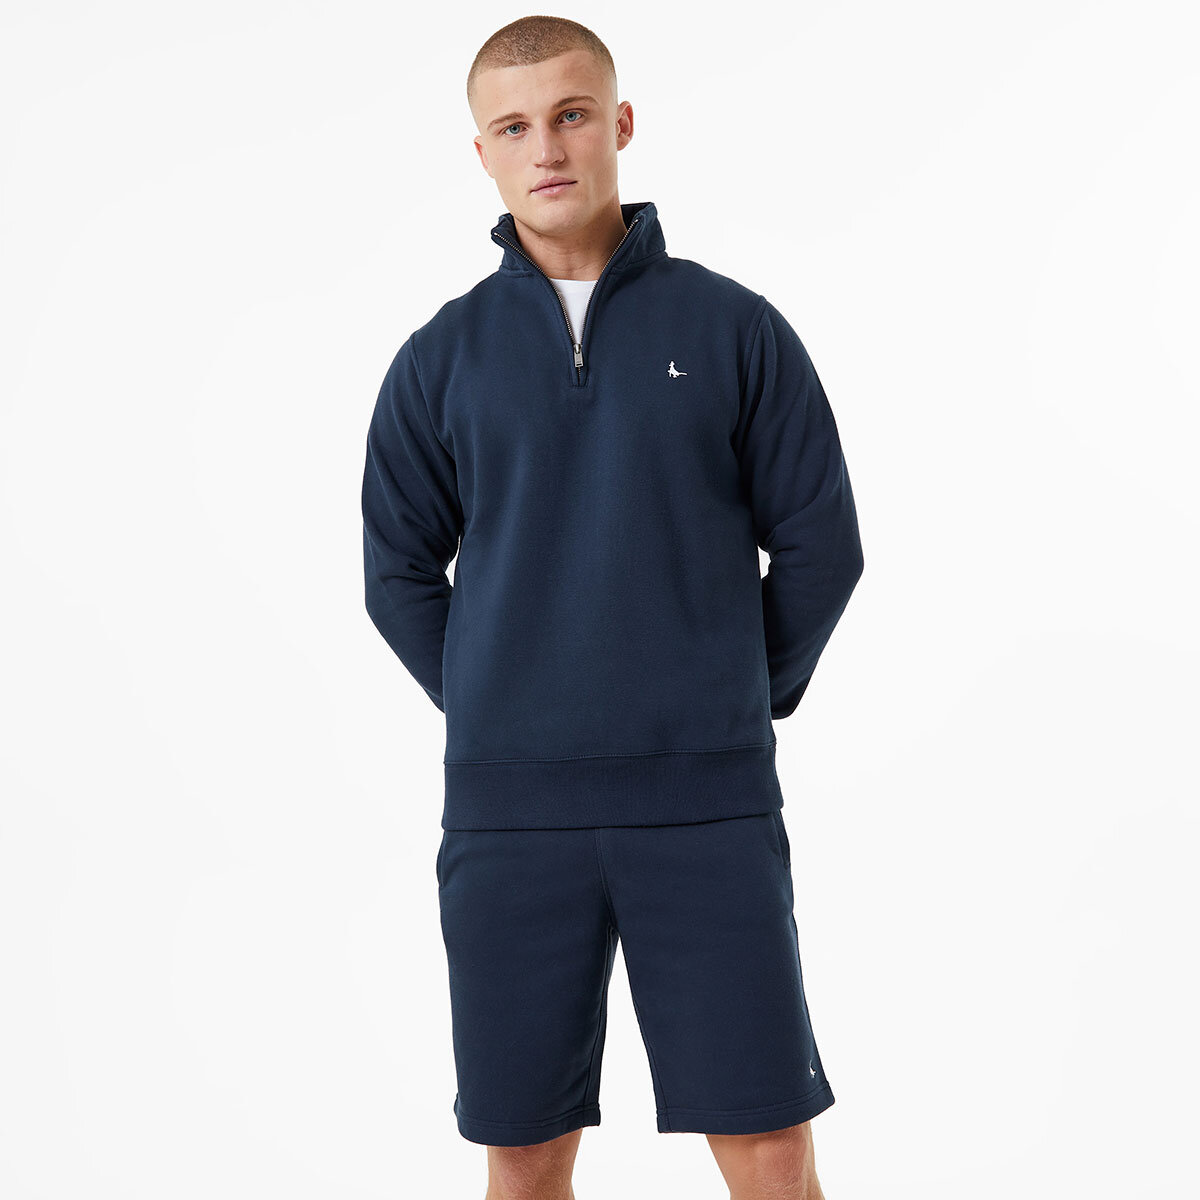 Jack Wills Barchester Quarter Zip Sweatshirt in Navy | Co...